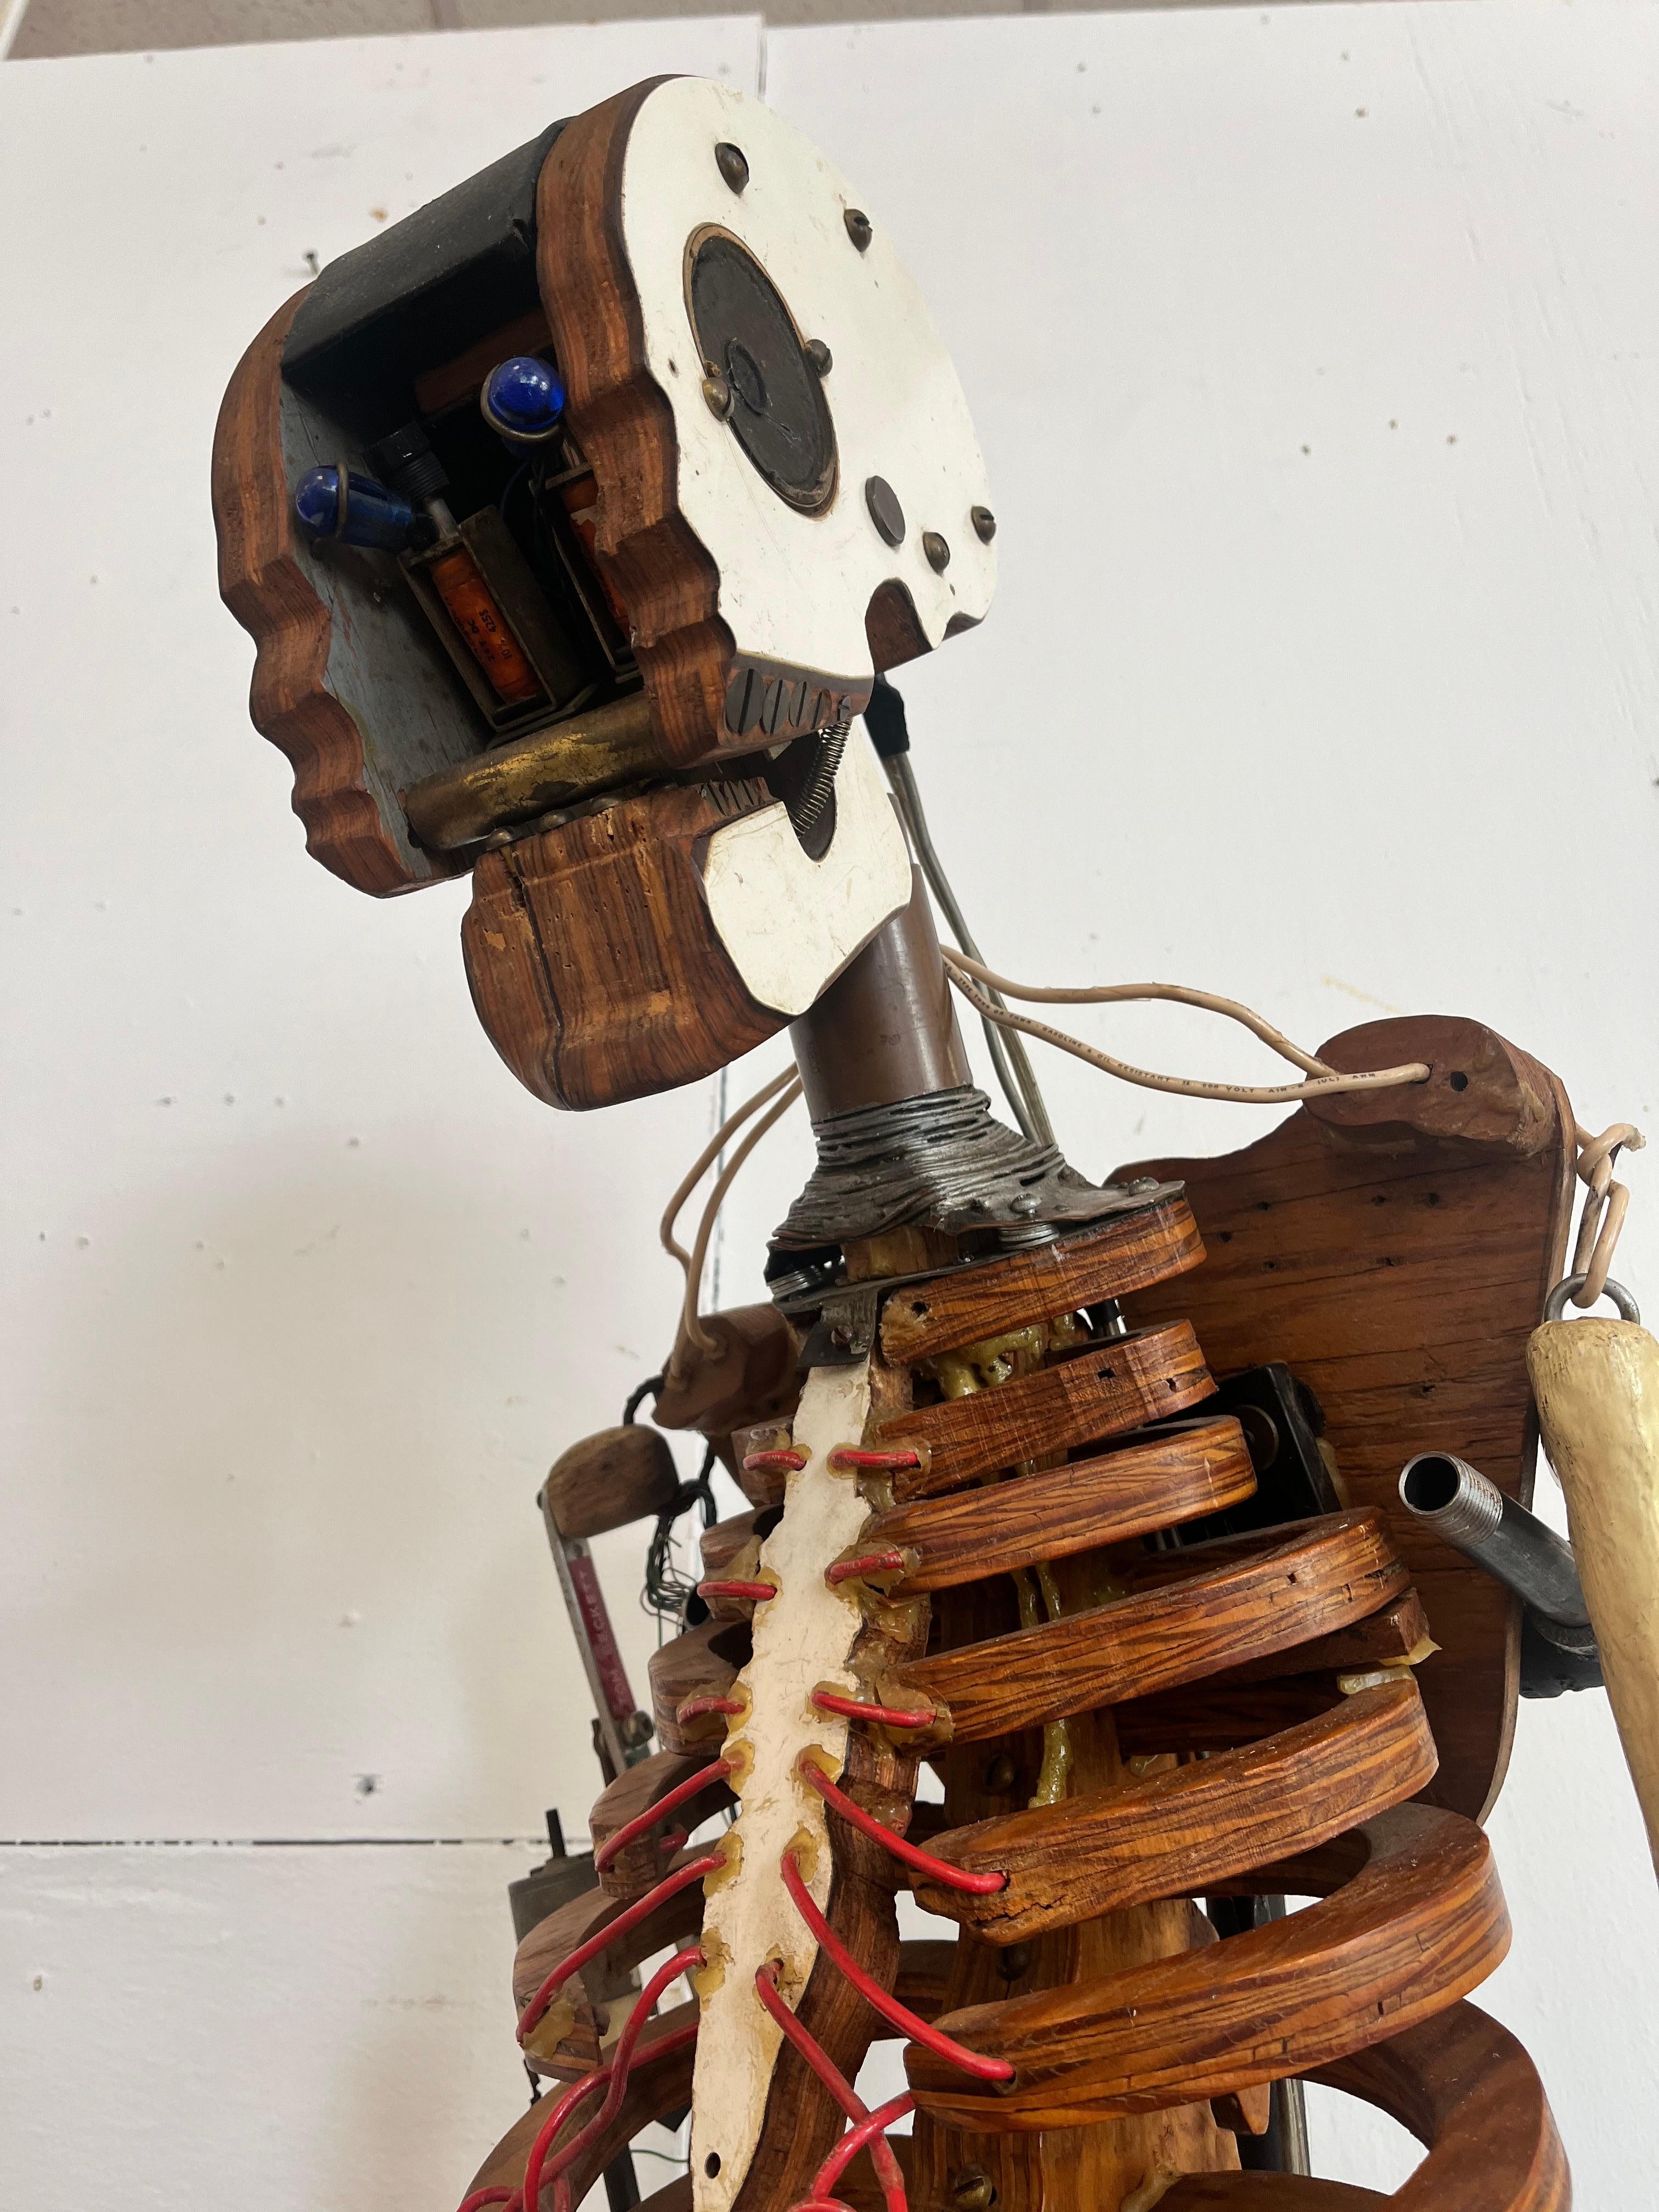 Un squelette vintage, datant des années 1980, fabriqué par un artiste à partir d'objets trouvés et monté sur un support. Une pièce unique fabriquée, conçue, sculptée, conçue, construite et maintenant présentée de manière exquise. La tête est posée